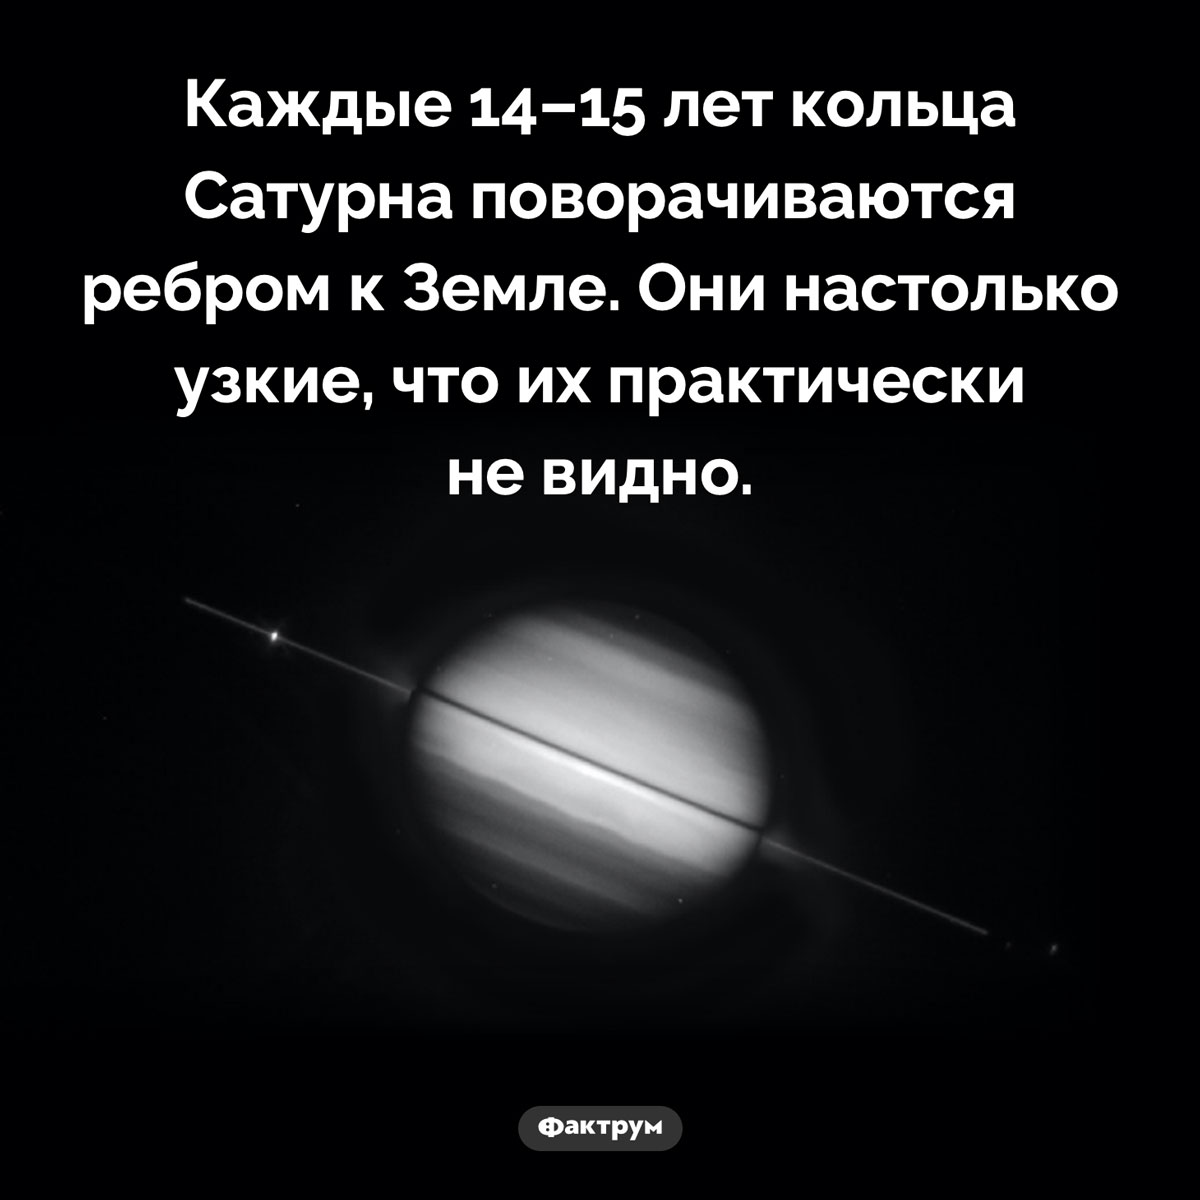 Кольца Сатурна время от времени «исчезают». Каждые 14–15 лет кольца Сатурна поворачиваются ребром к Земле. Они настолько узкие, что их практически не видно.